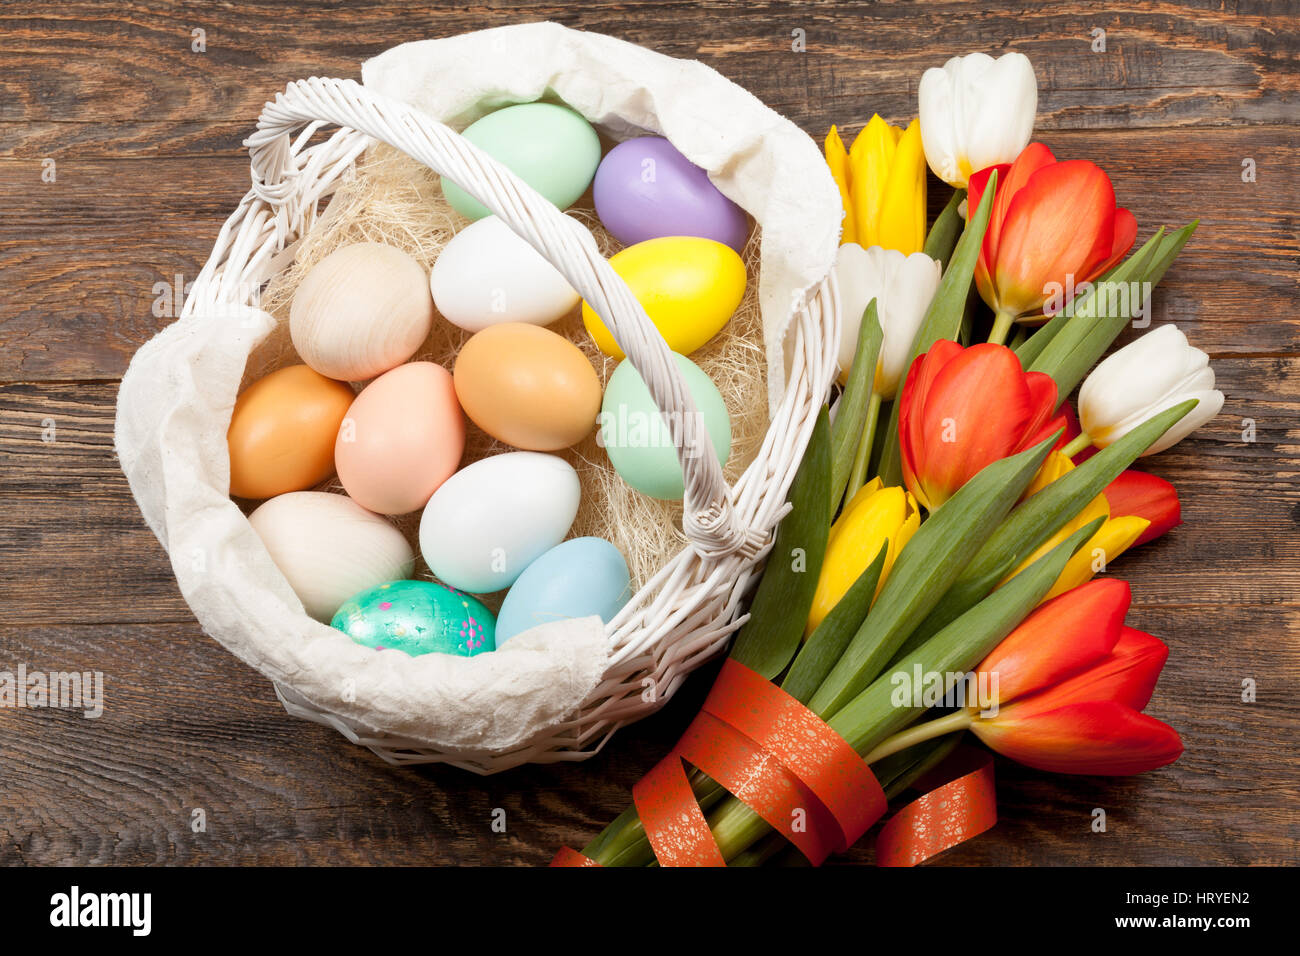 Los huevos de pascua en una cesta con coloridos tulipanes blancos sobre fondo de madera Foto de stock